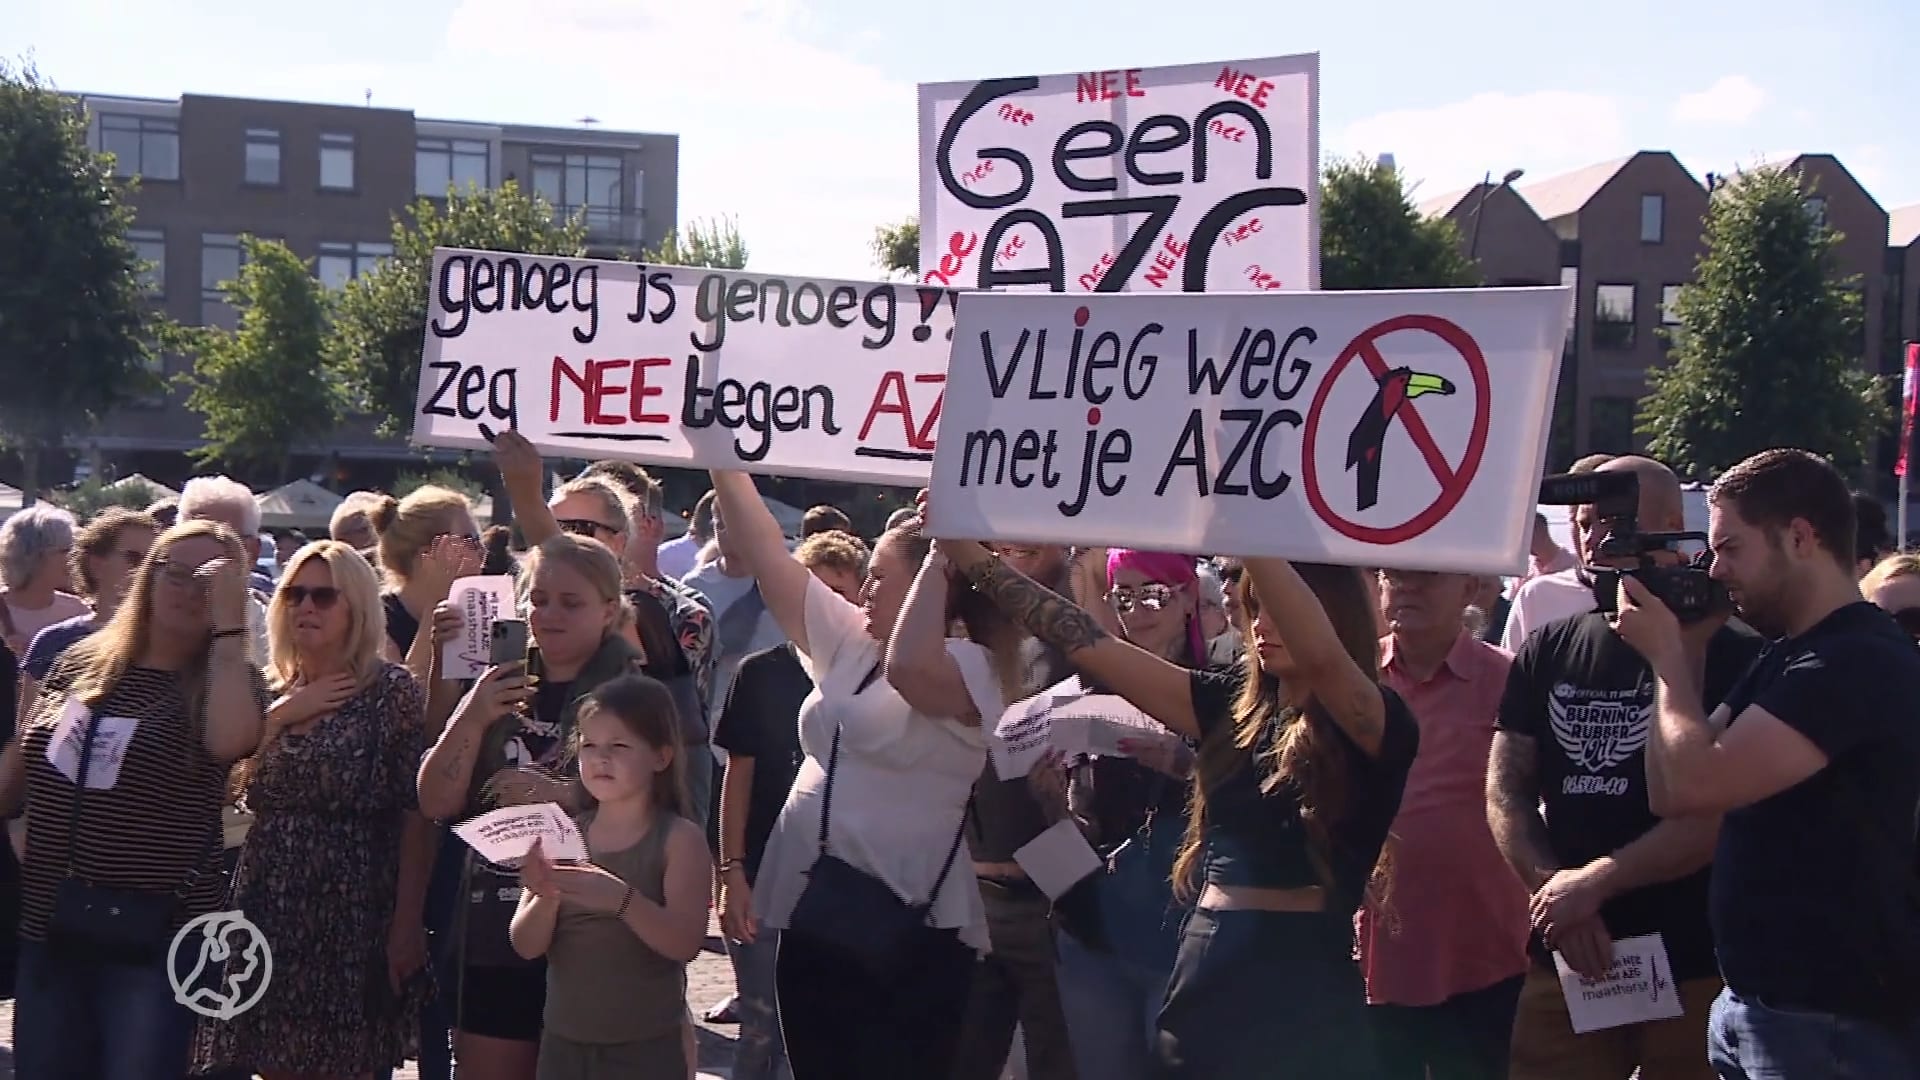 Inwoners demonstreren tegen komst azc Uden: 'Niet bij mij achter in de tuin'